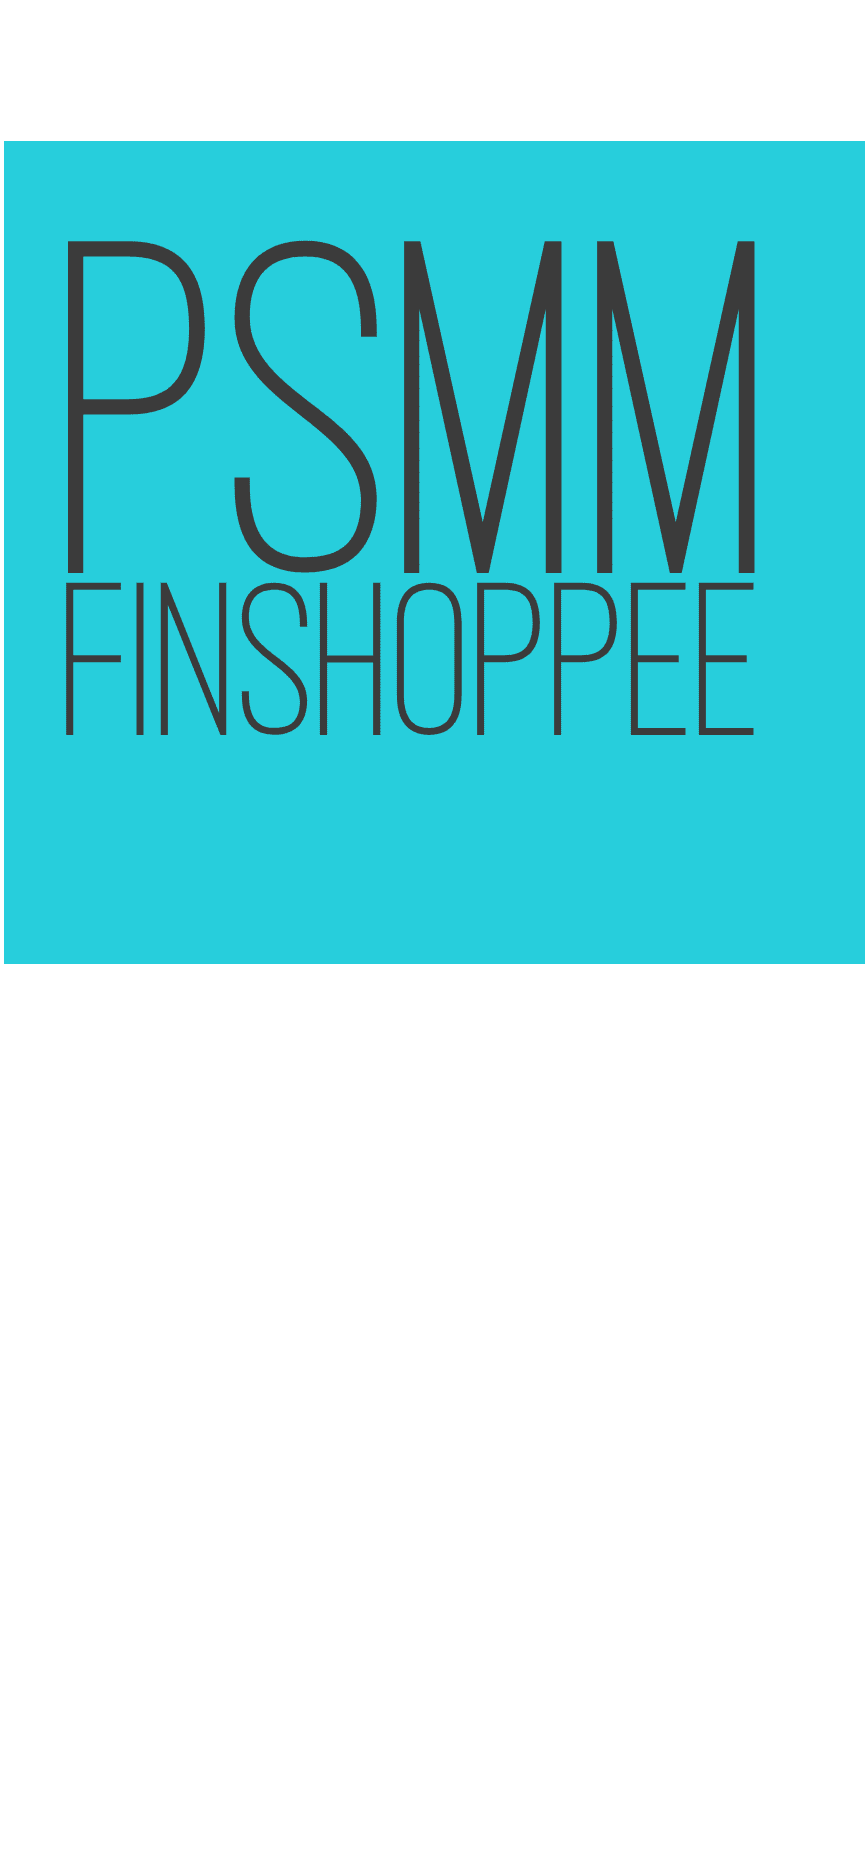 PSMM Finshoppee